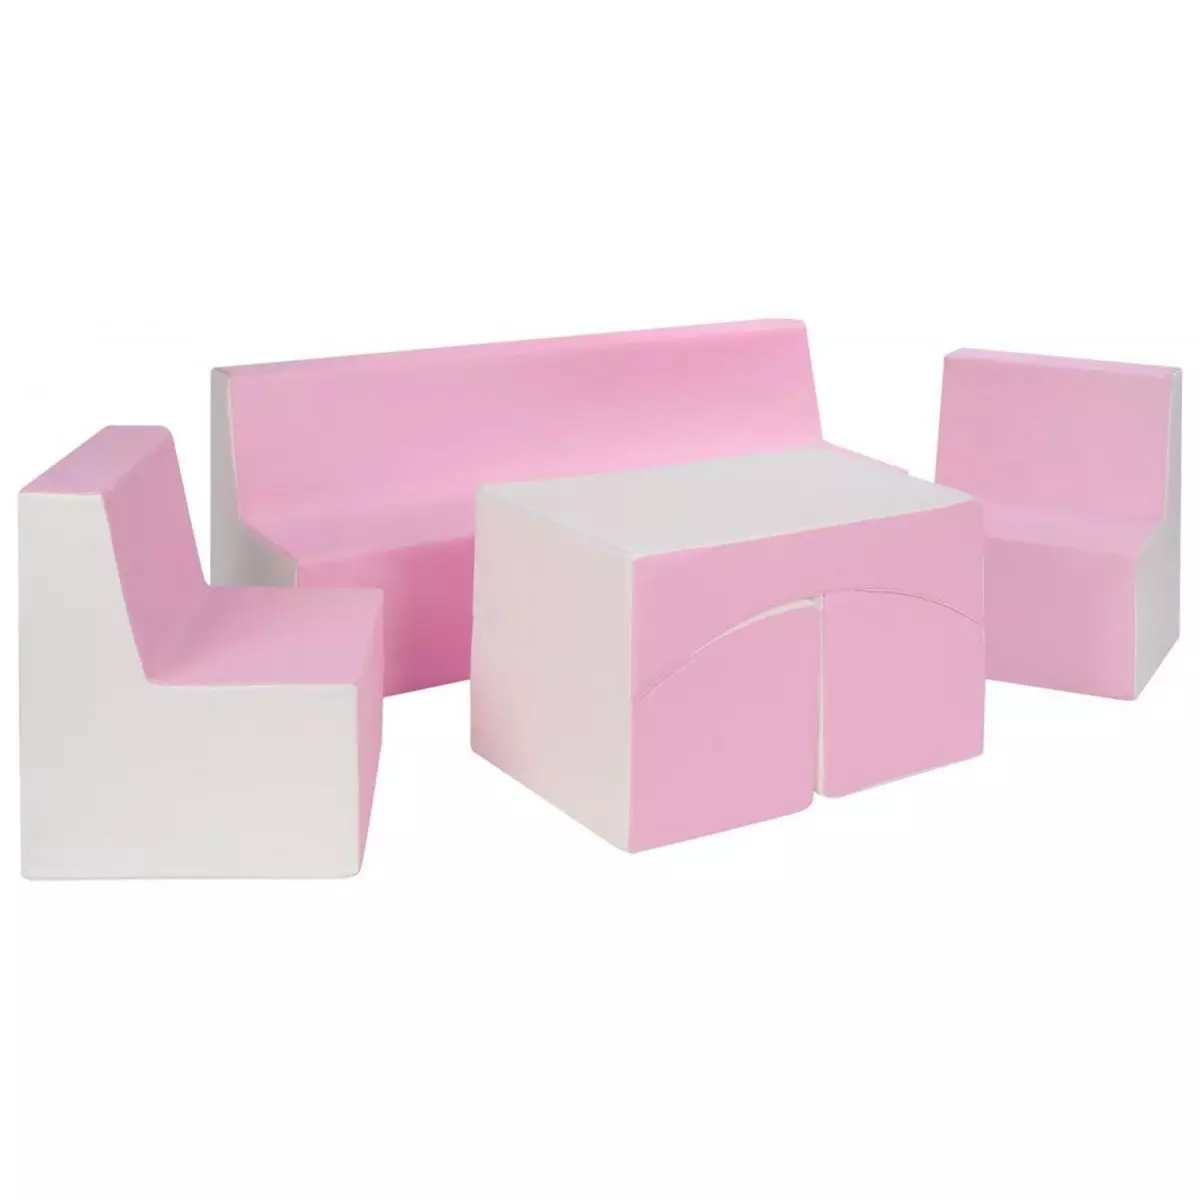  Ensemble de fauteuils chambre enfant blanc, rose (pastel)